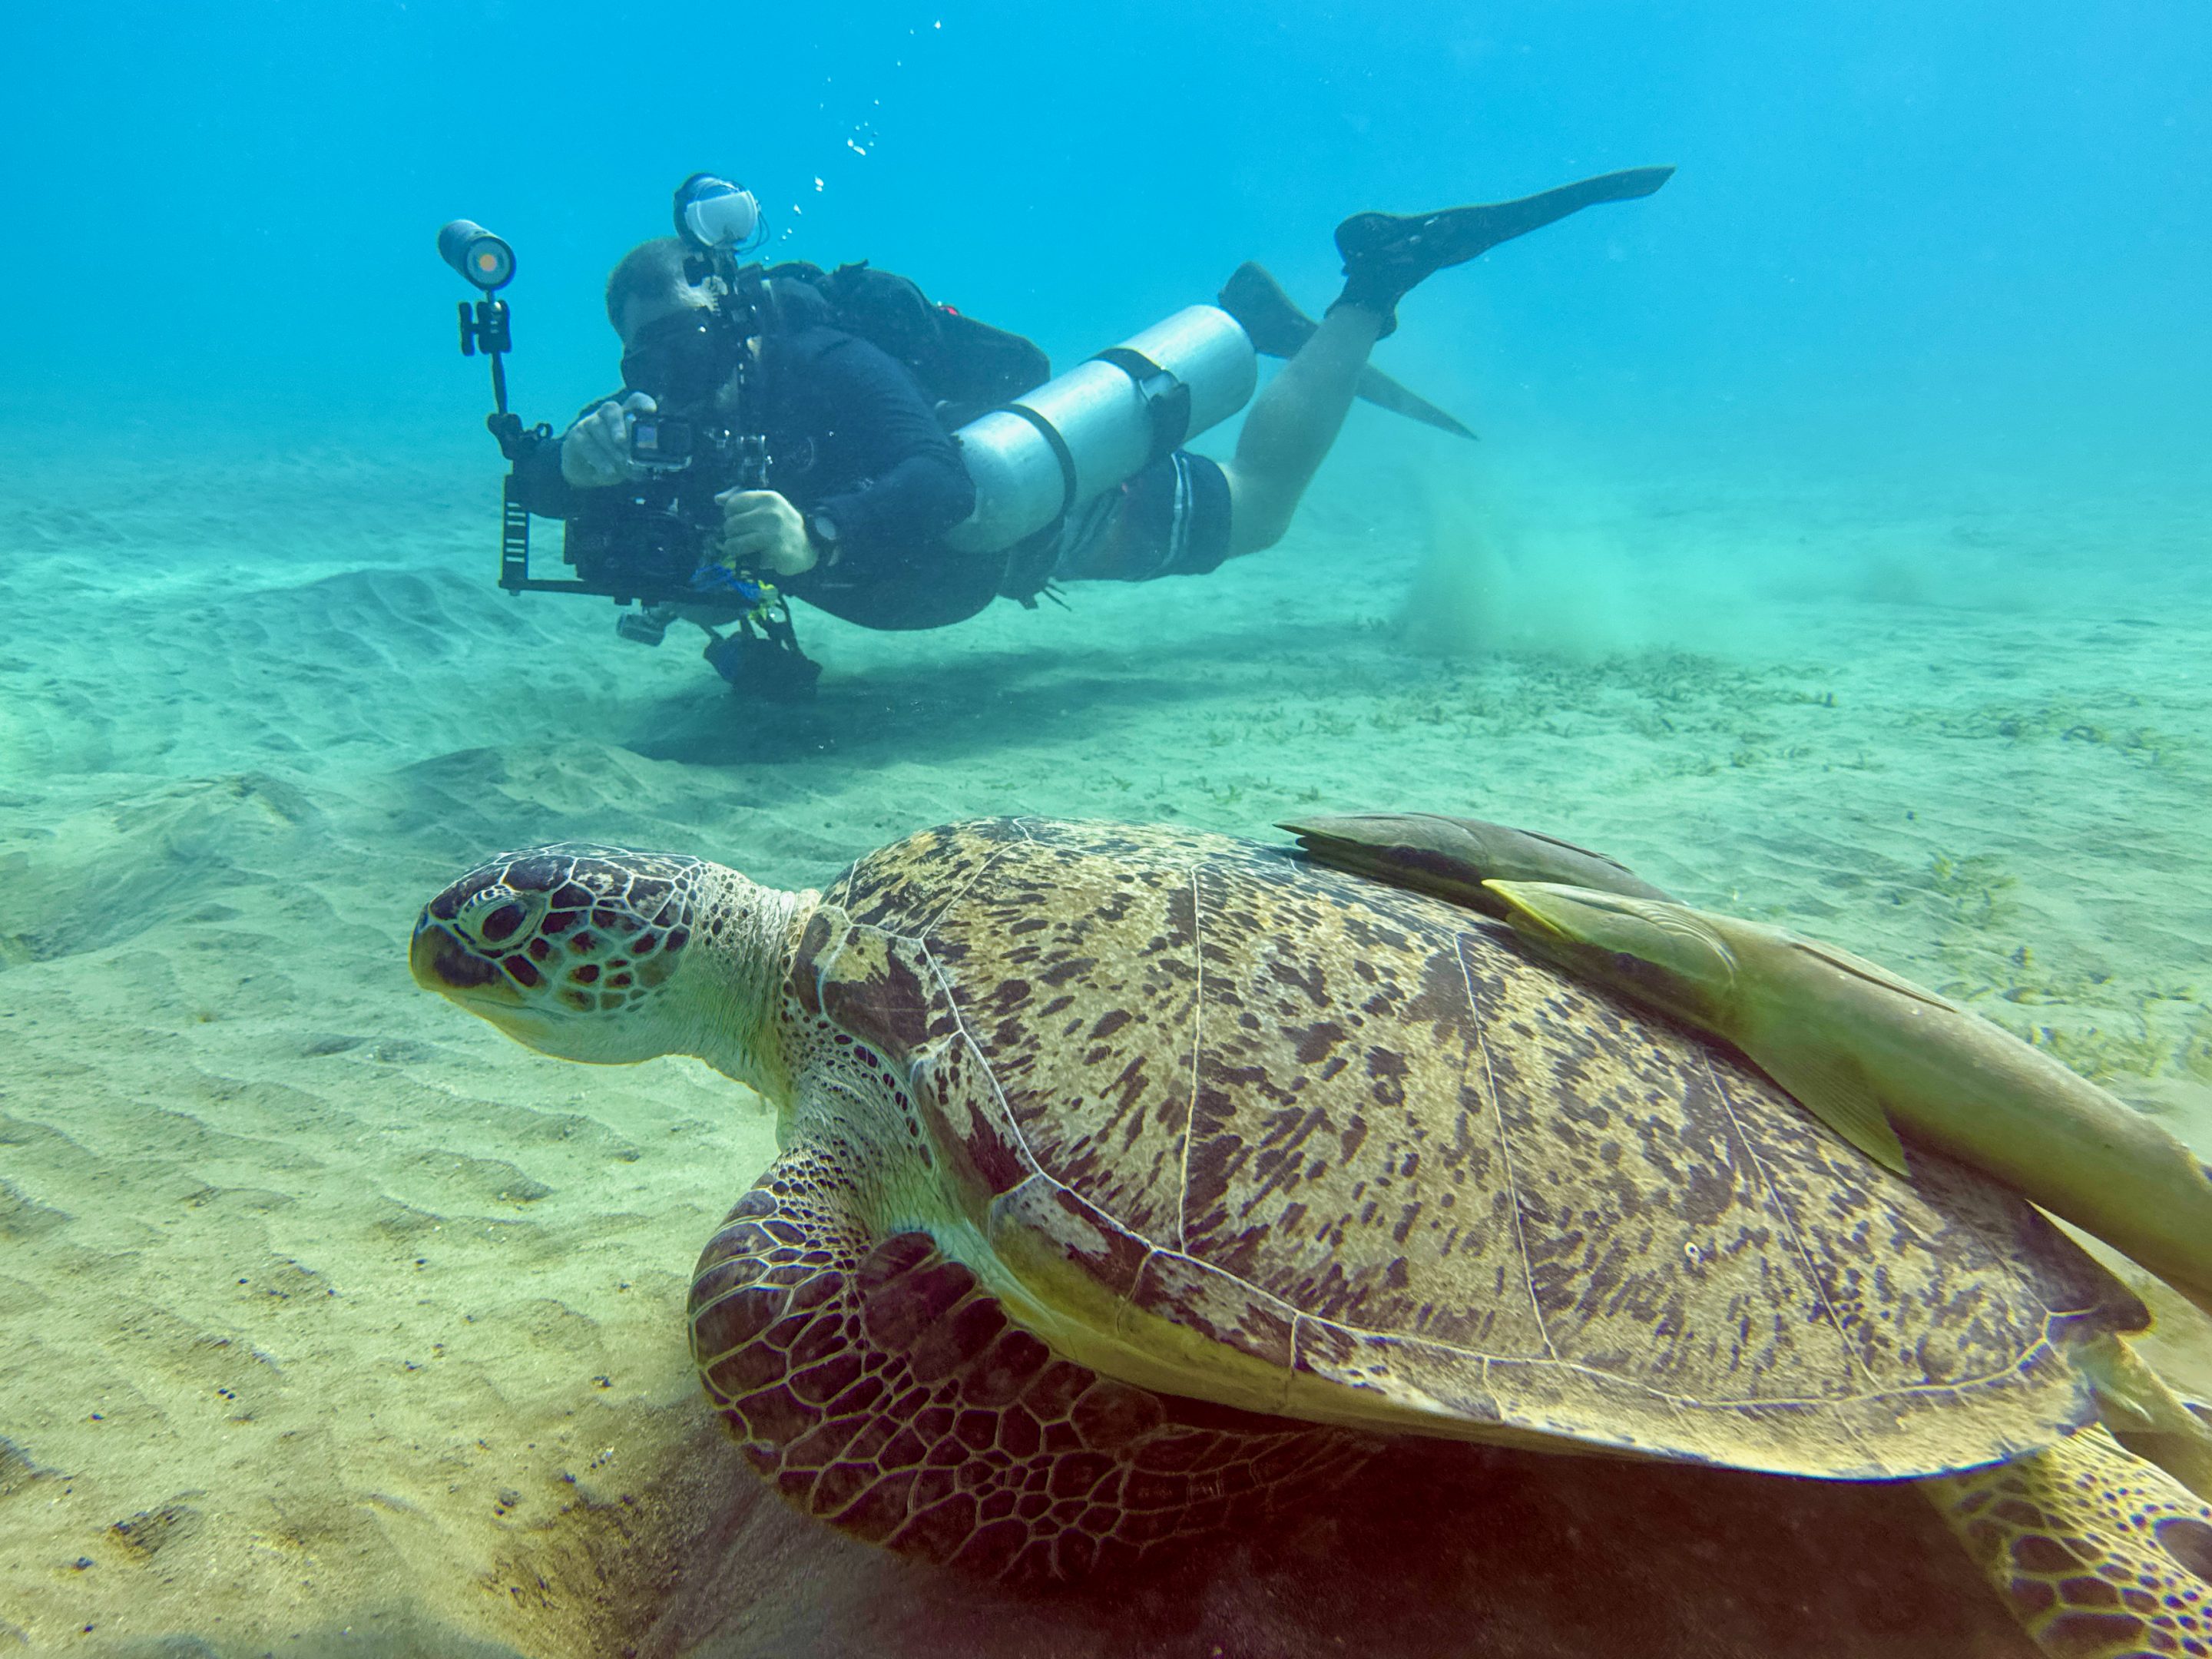 Schildkröten satt – in Abu Dabbab siehst du bei jedem Tauchgang die faszinierenden Reptilien. Foto: Sascha Tegtmeyer Erlebnisse mit dem Blue Ocean Dive Center Abu Dabbab mit dir teilen.